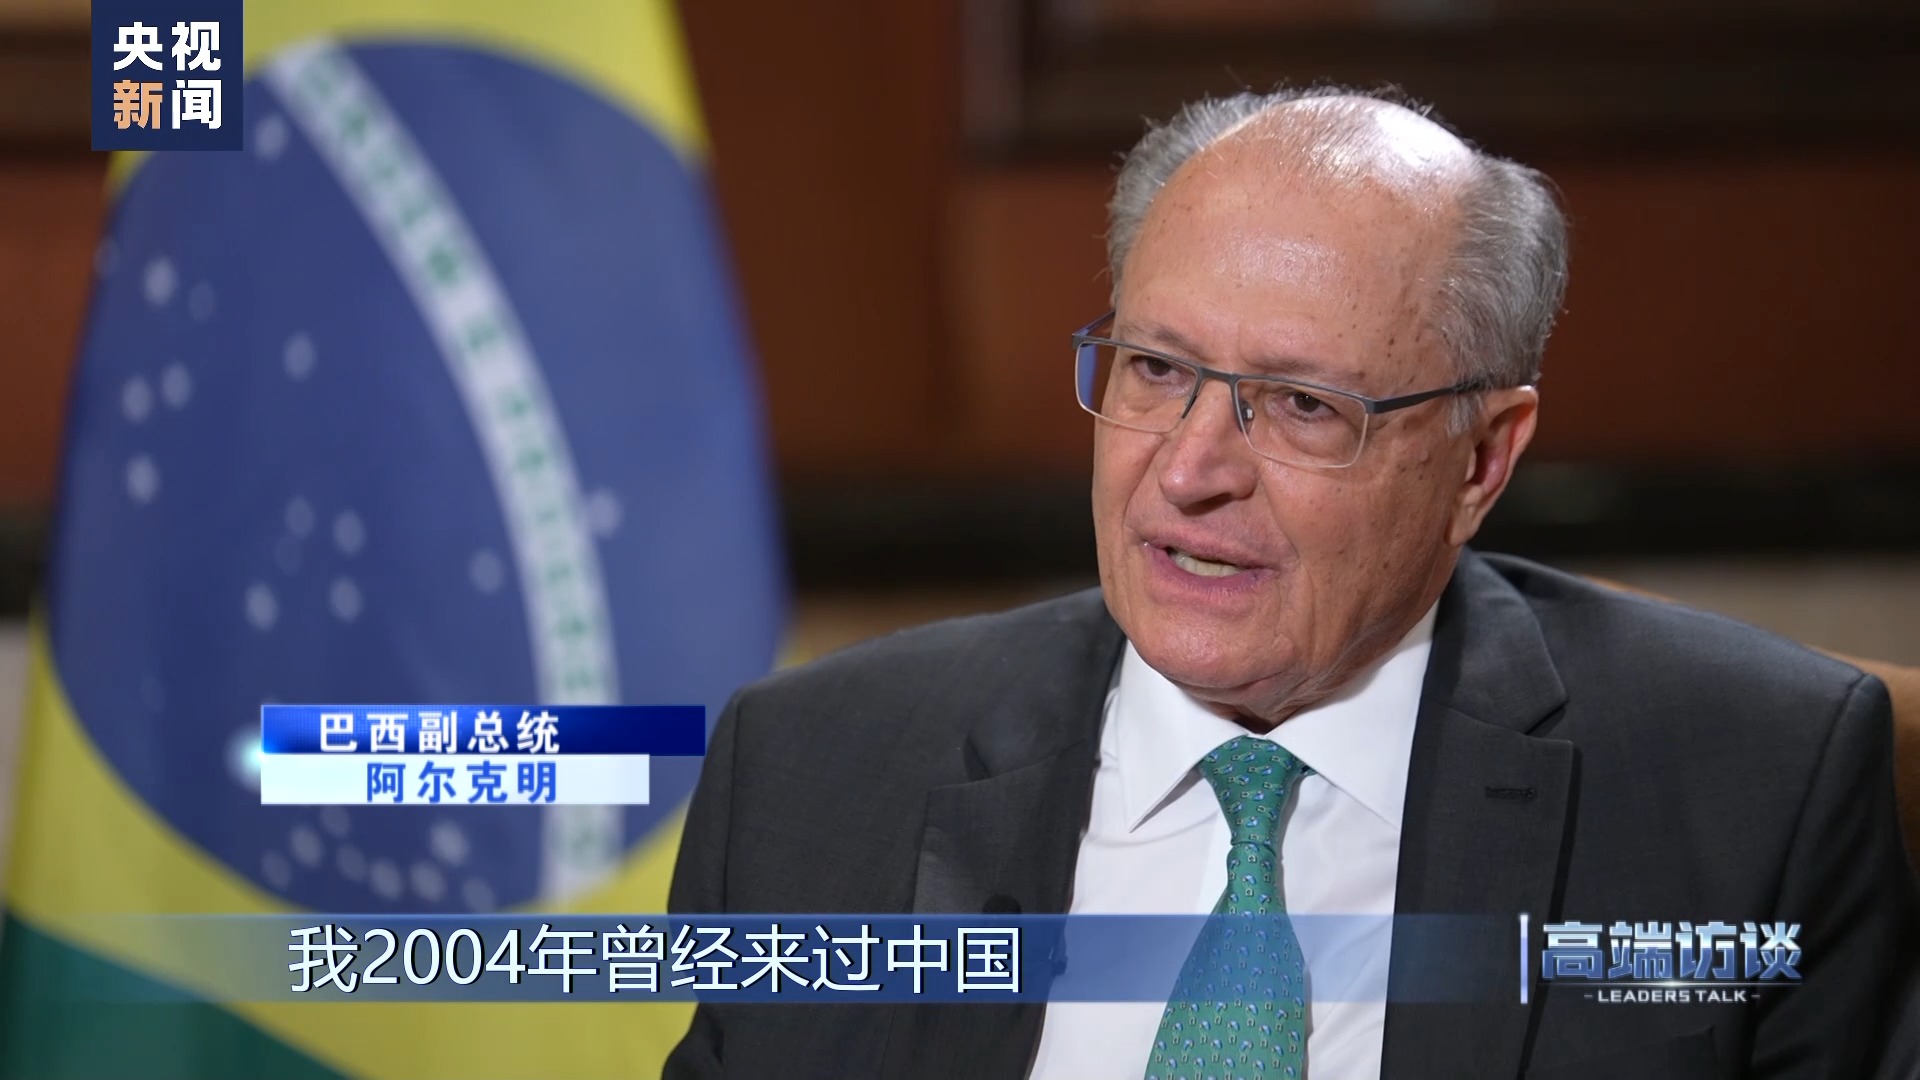 معاون رئیس جمهور برزیل: به دنبال تقویت همکاری با چین در زمینه‌هایی مانند توسعه زیرساخت‌ها و خودروی برقی هستیم